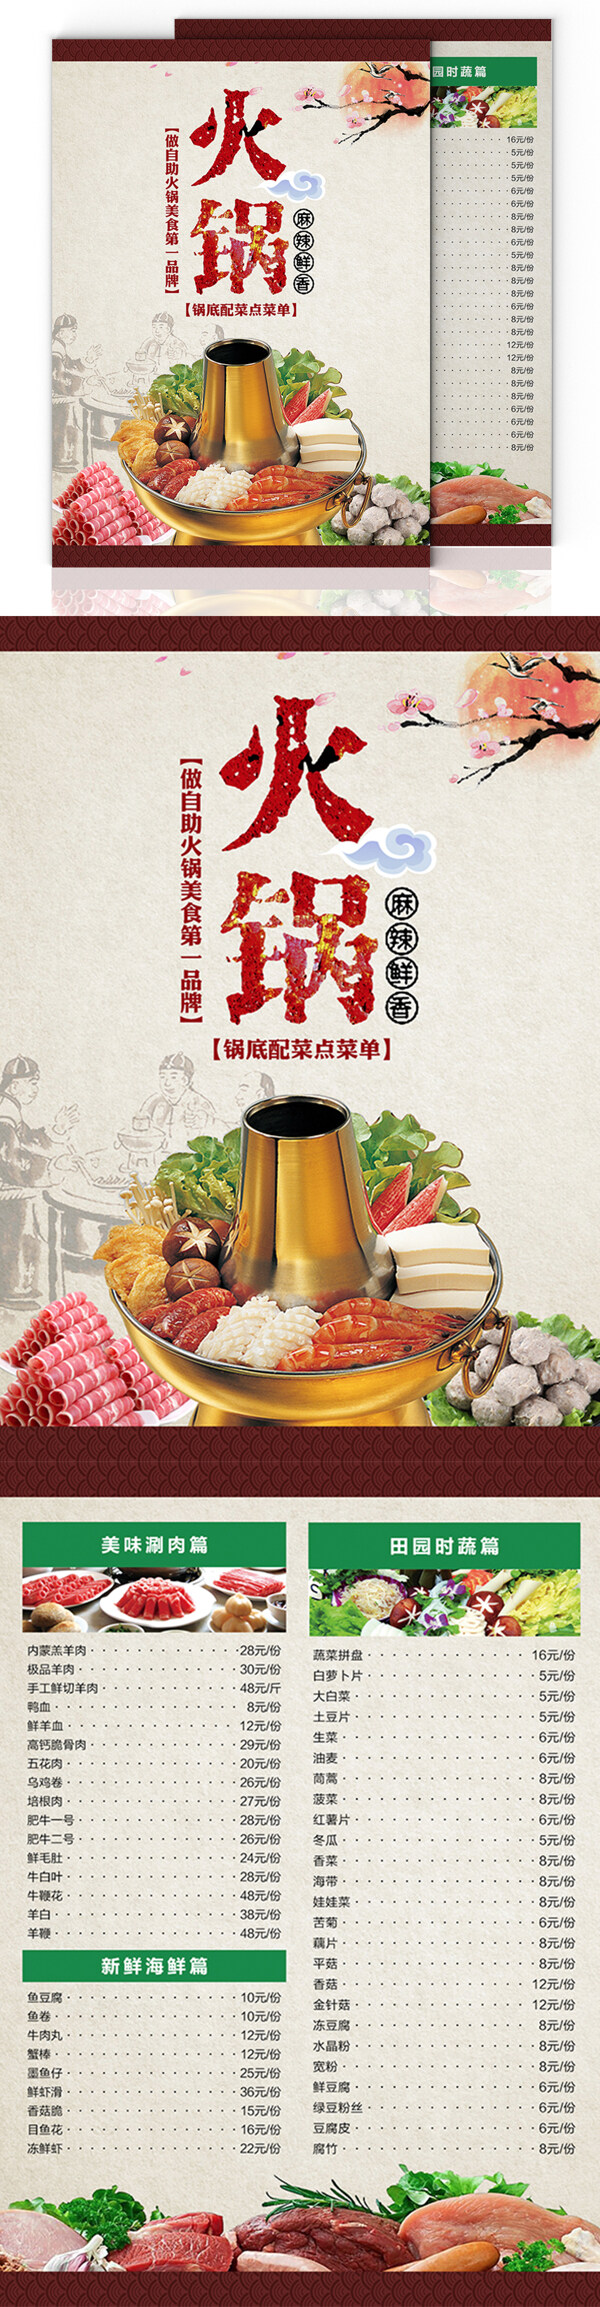 中国风火锅美食菜单菜谱